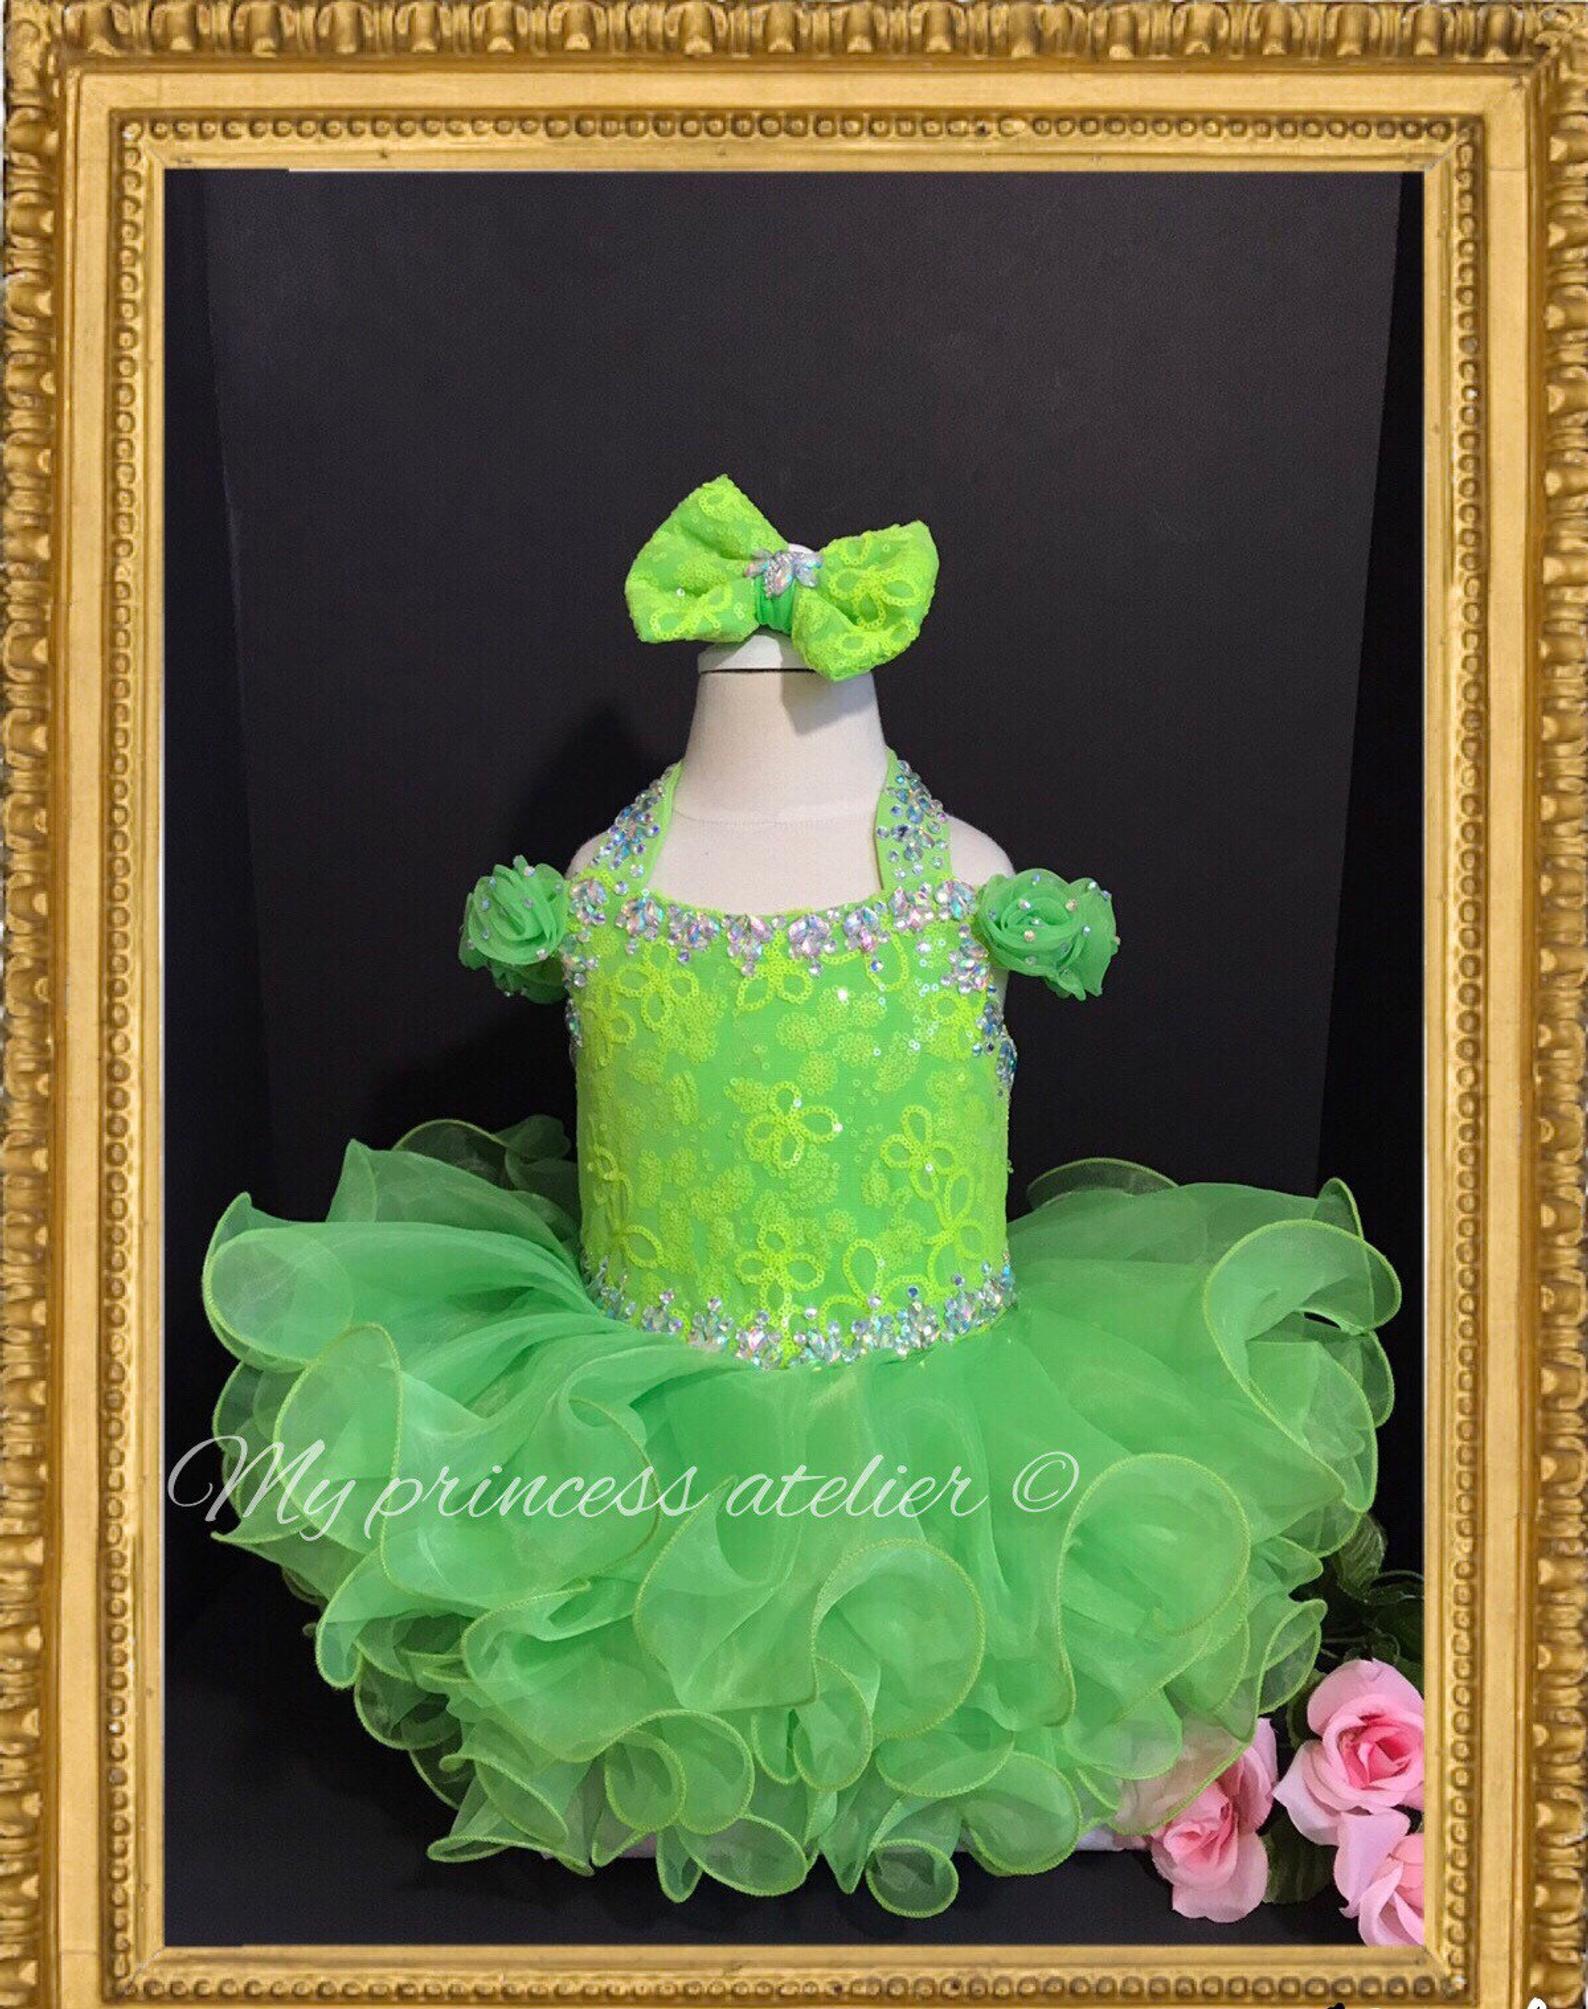 Tinker bell inspired dress/ pageant green dress/ princess birthday dress/ green flower girl dress/ green birthday dress / green costume dress